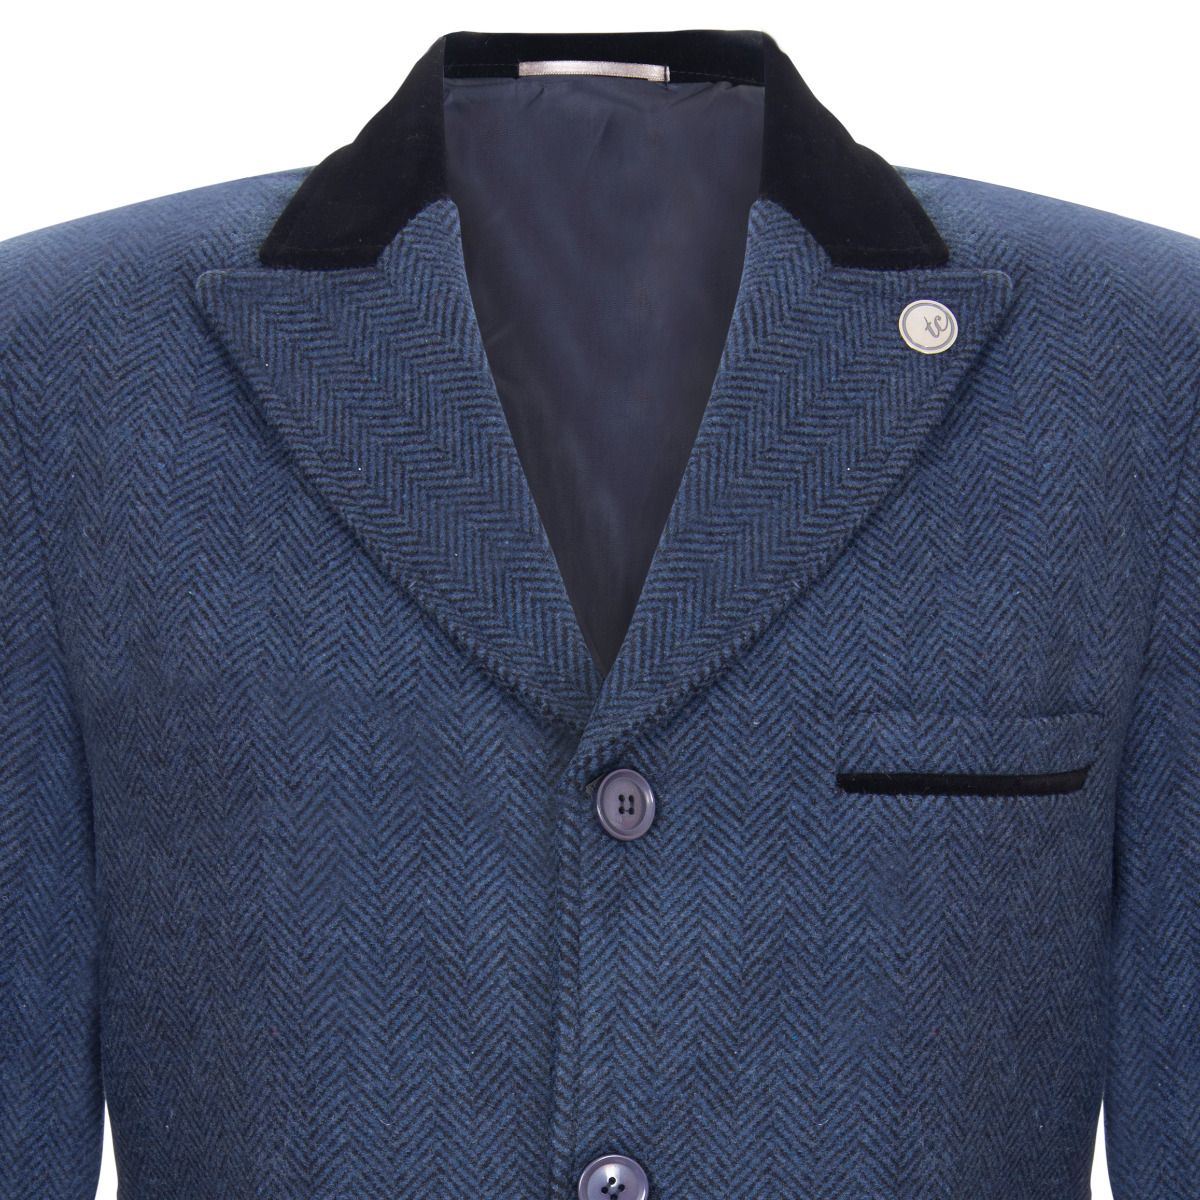 Mens 3/4 Long Navy Crombie Overcoat Jacket Herringbone Tweed Coat Peaky Blinder - Upperclass Fashions 